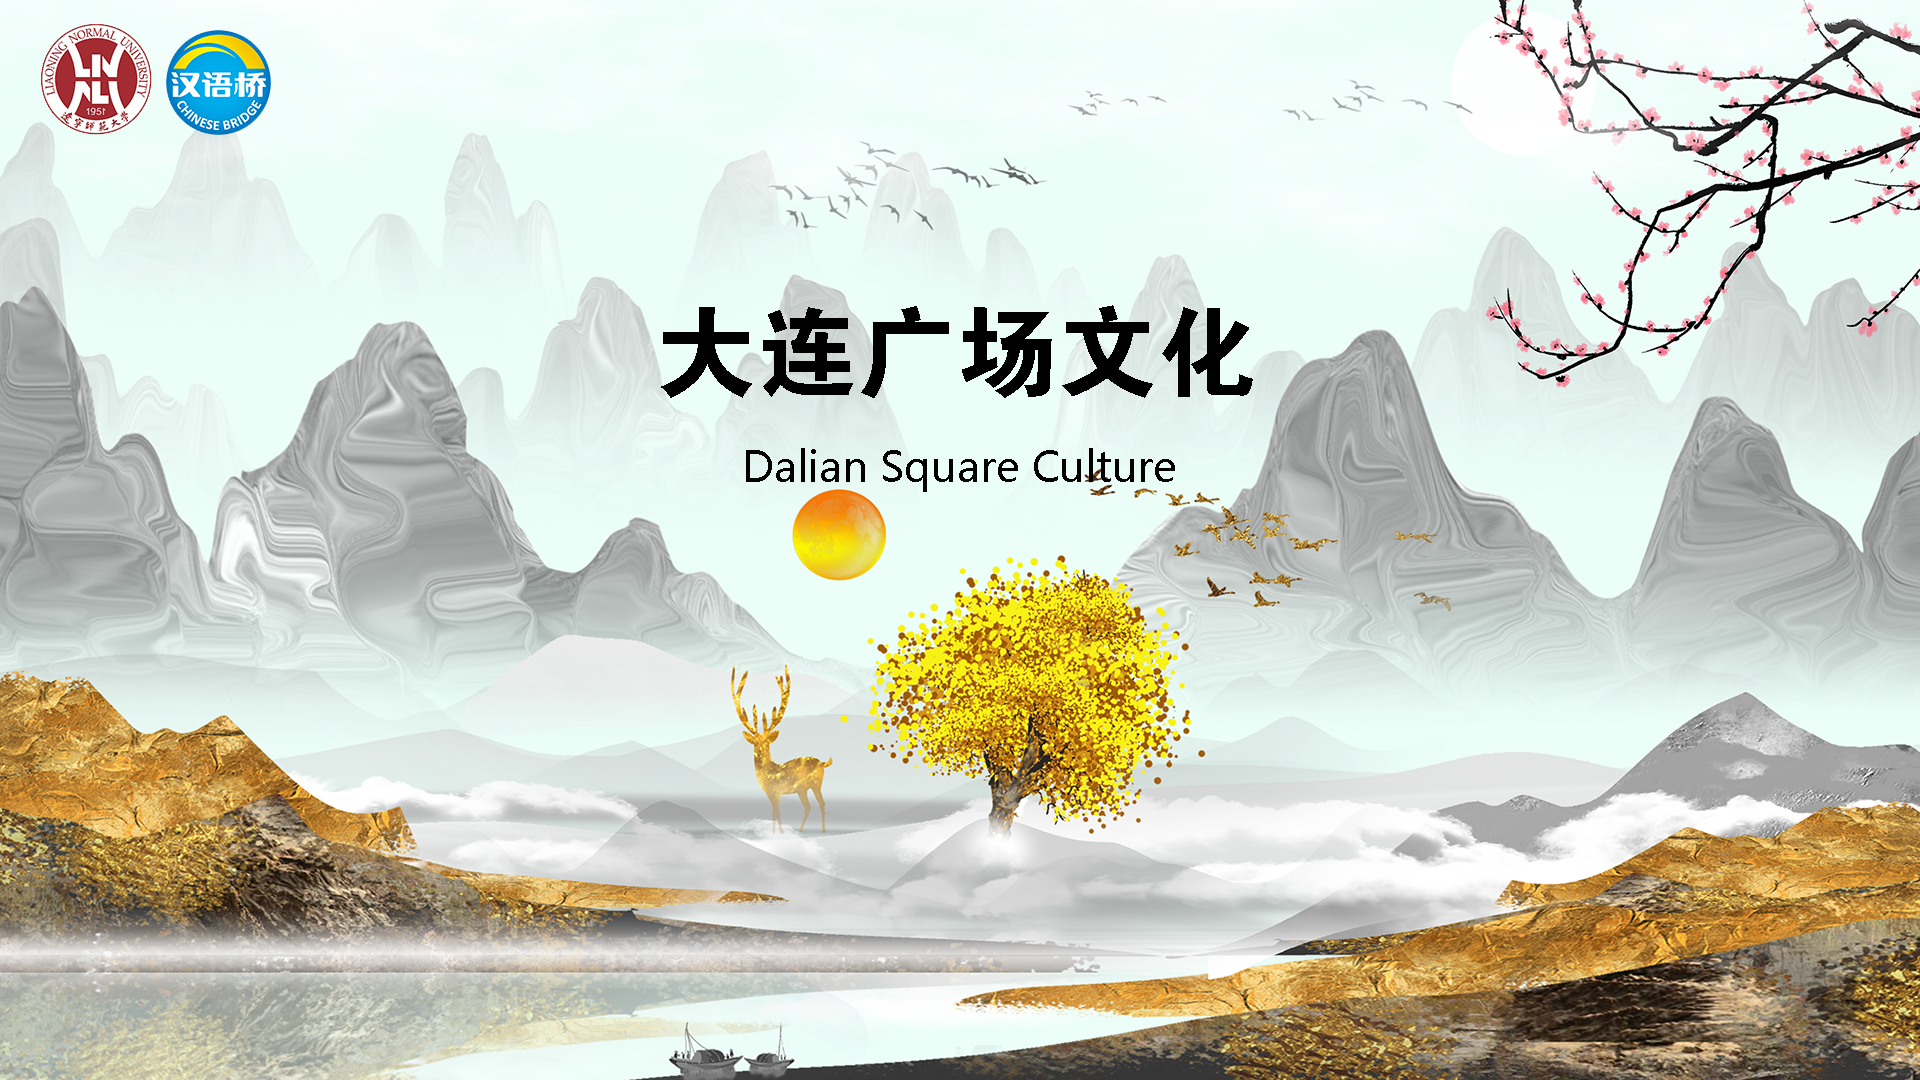 Dalian Square Culture